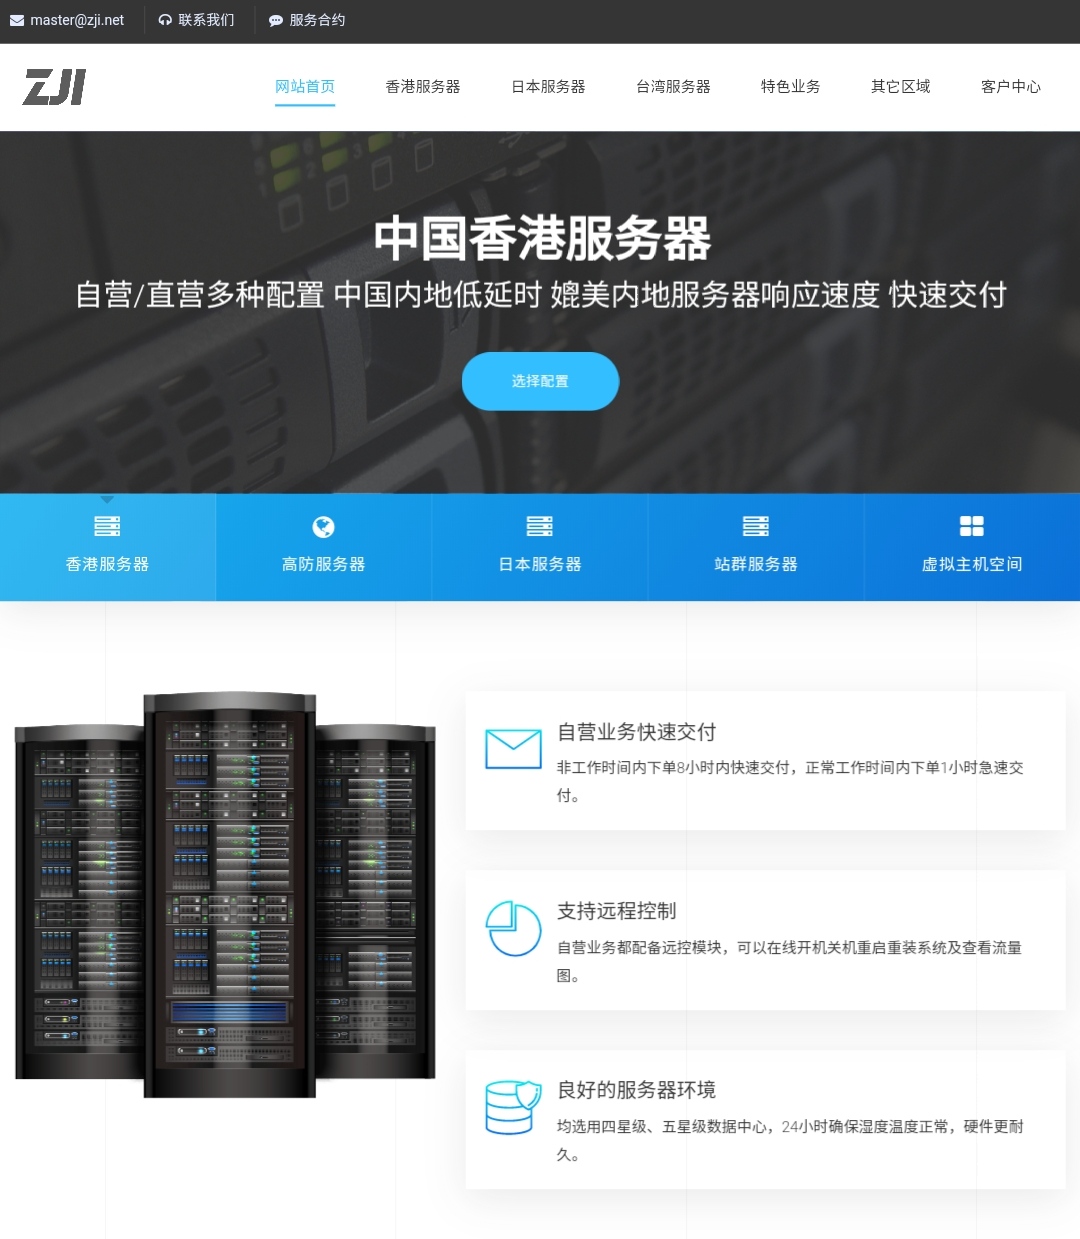 zji：台湾cn2服务器，665元/月，e5-2650/32g内存/1TSSD/10M带宽,IMG_20210120_002254.jpg,香港服务器,日本服务器,独立服务器,高防服务器,云服务器,性价比服务器,第1张